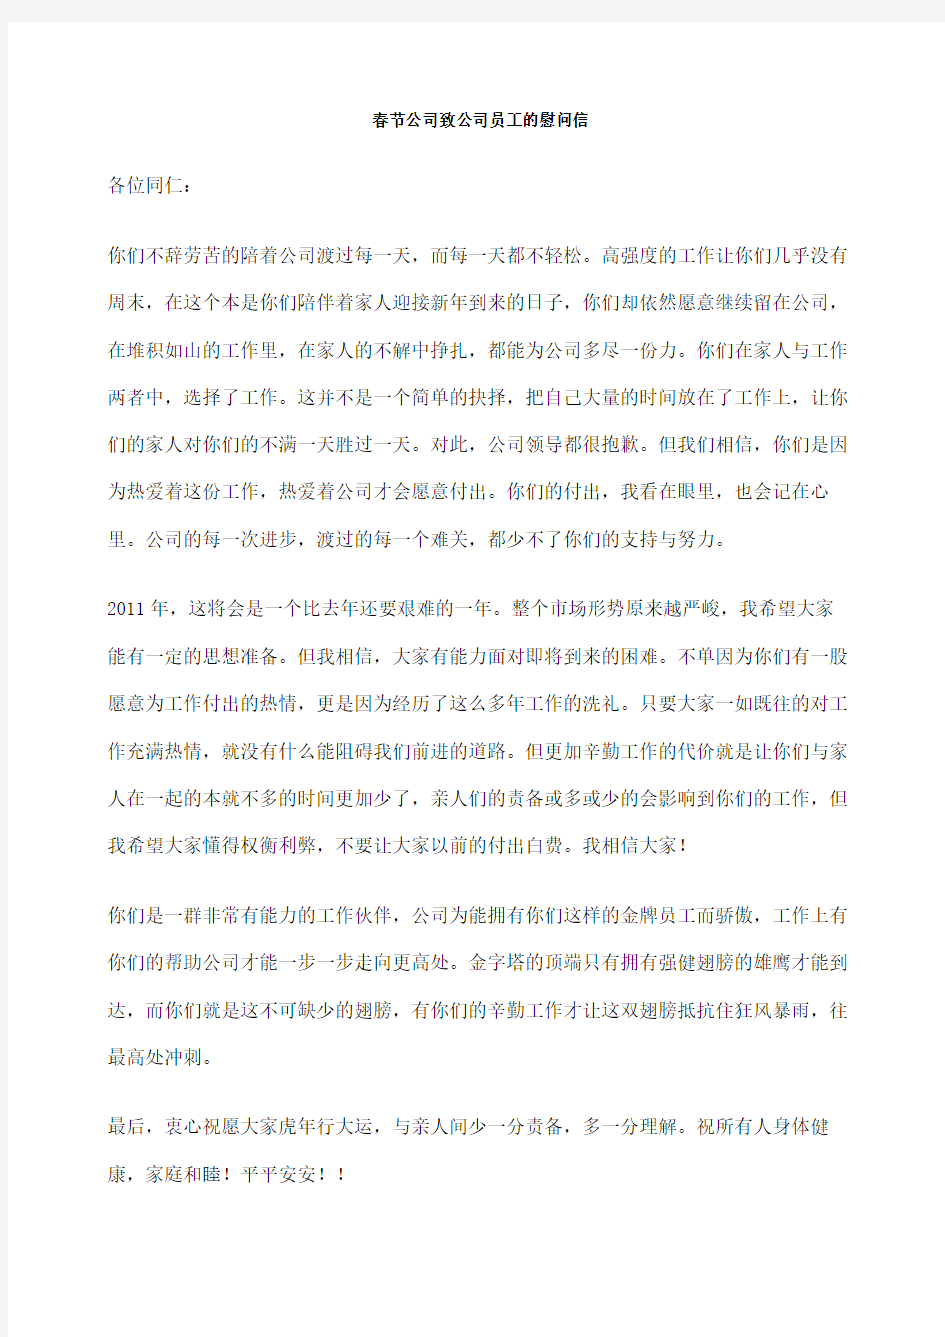 春节公司致公司员工的慰问信完整版